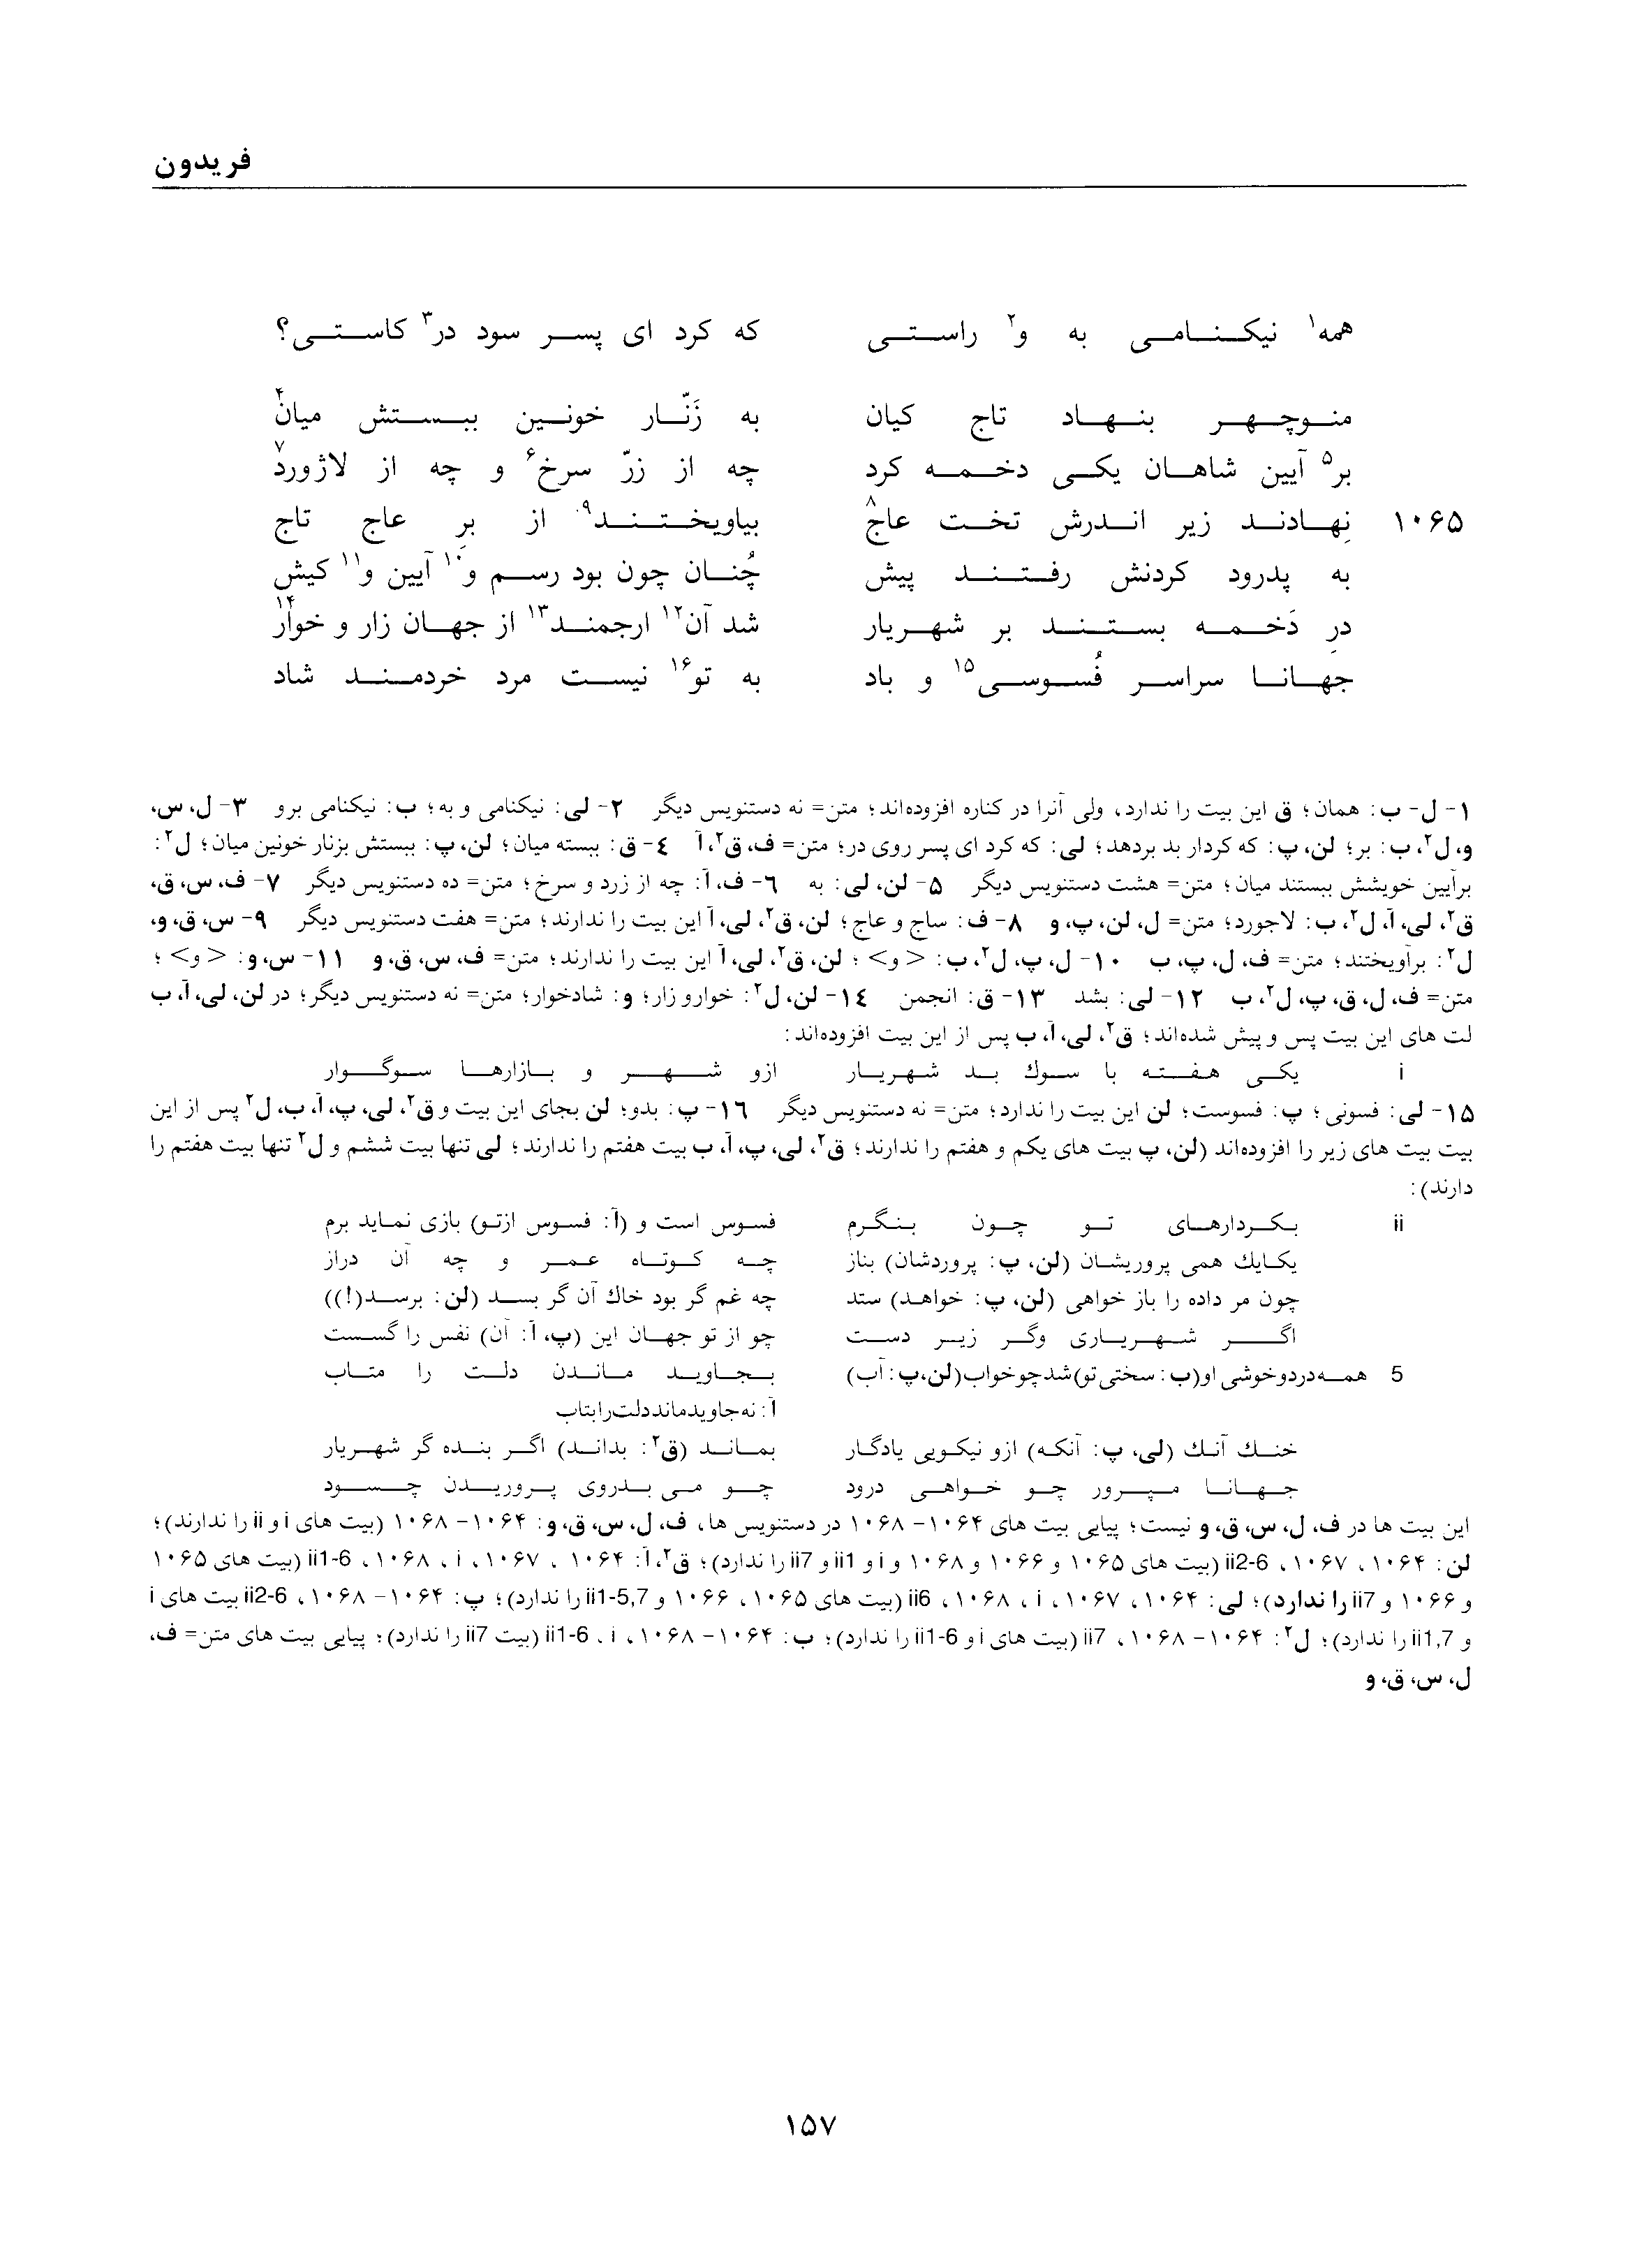 vol. 1, p. 157